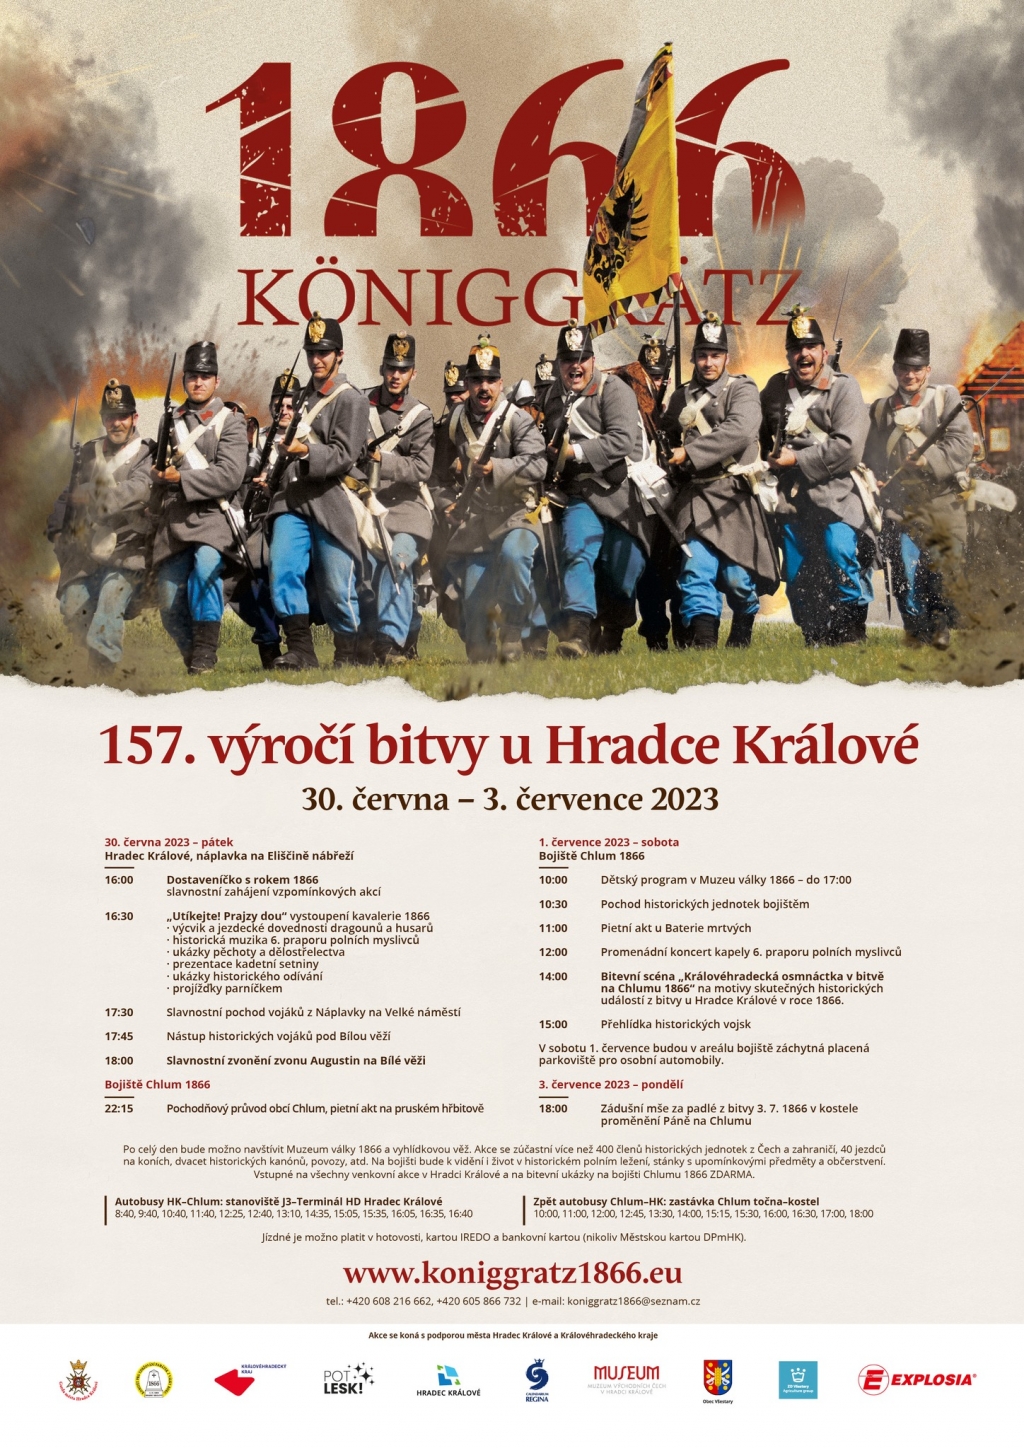 157. výročí bitvy u Hradce Králové a války 1866 - velká bitevní scéna Königgrätz 1866